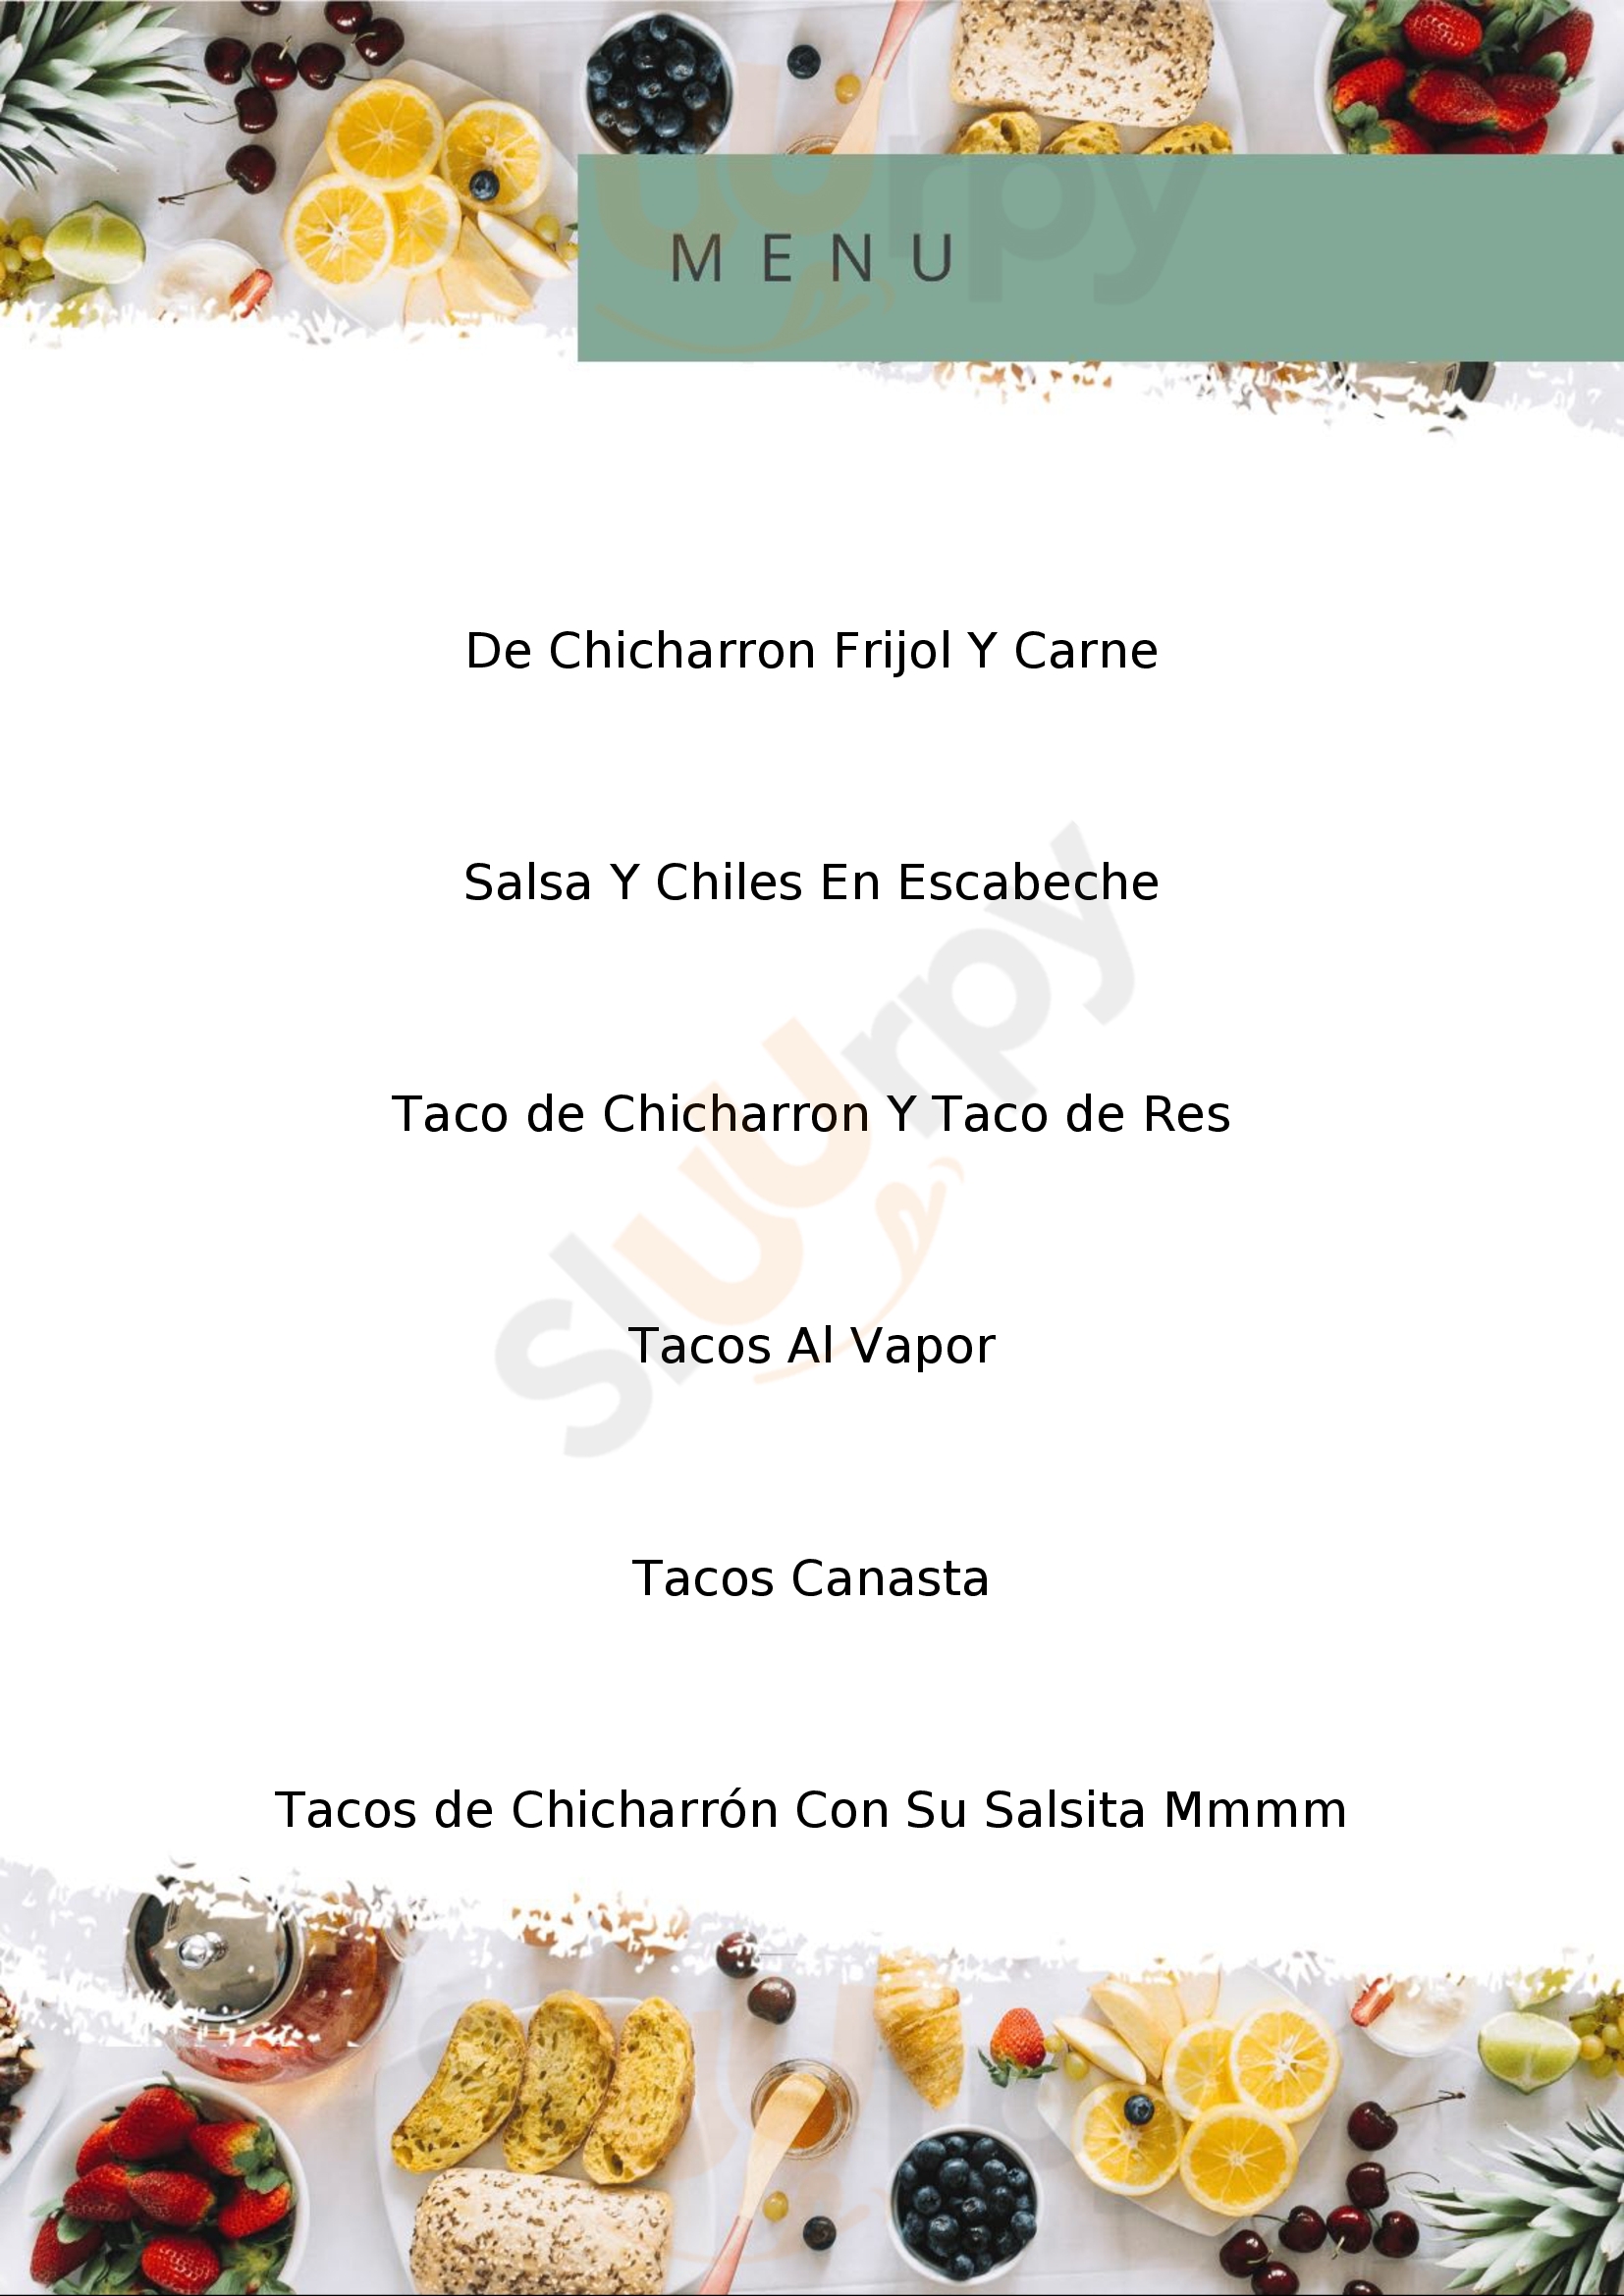 Tacos A Vapor Gil Tijuana Menu - 1